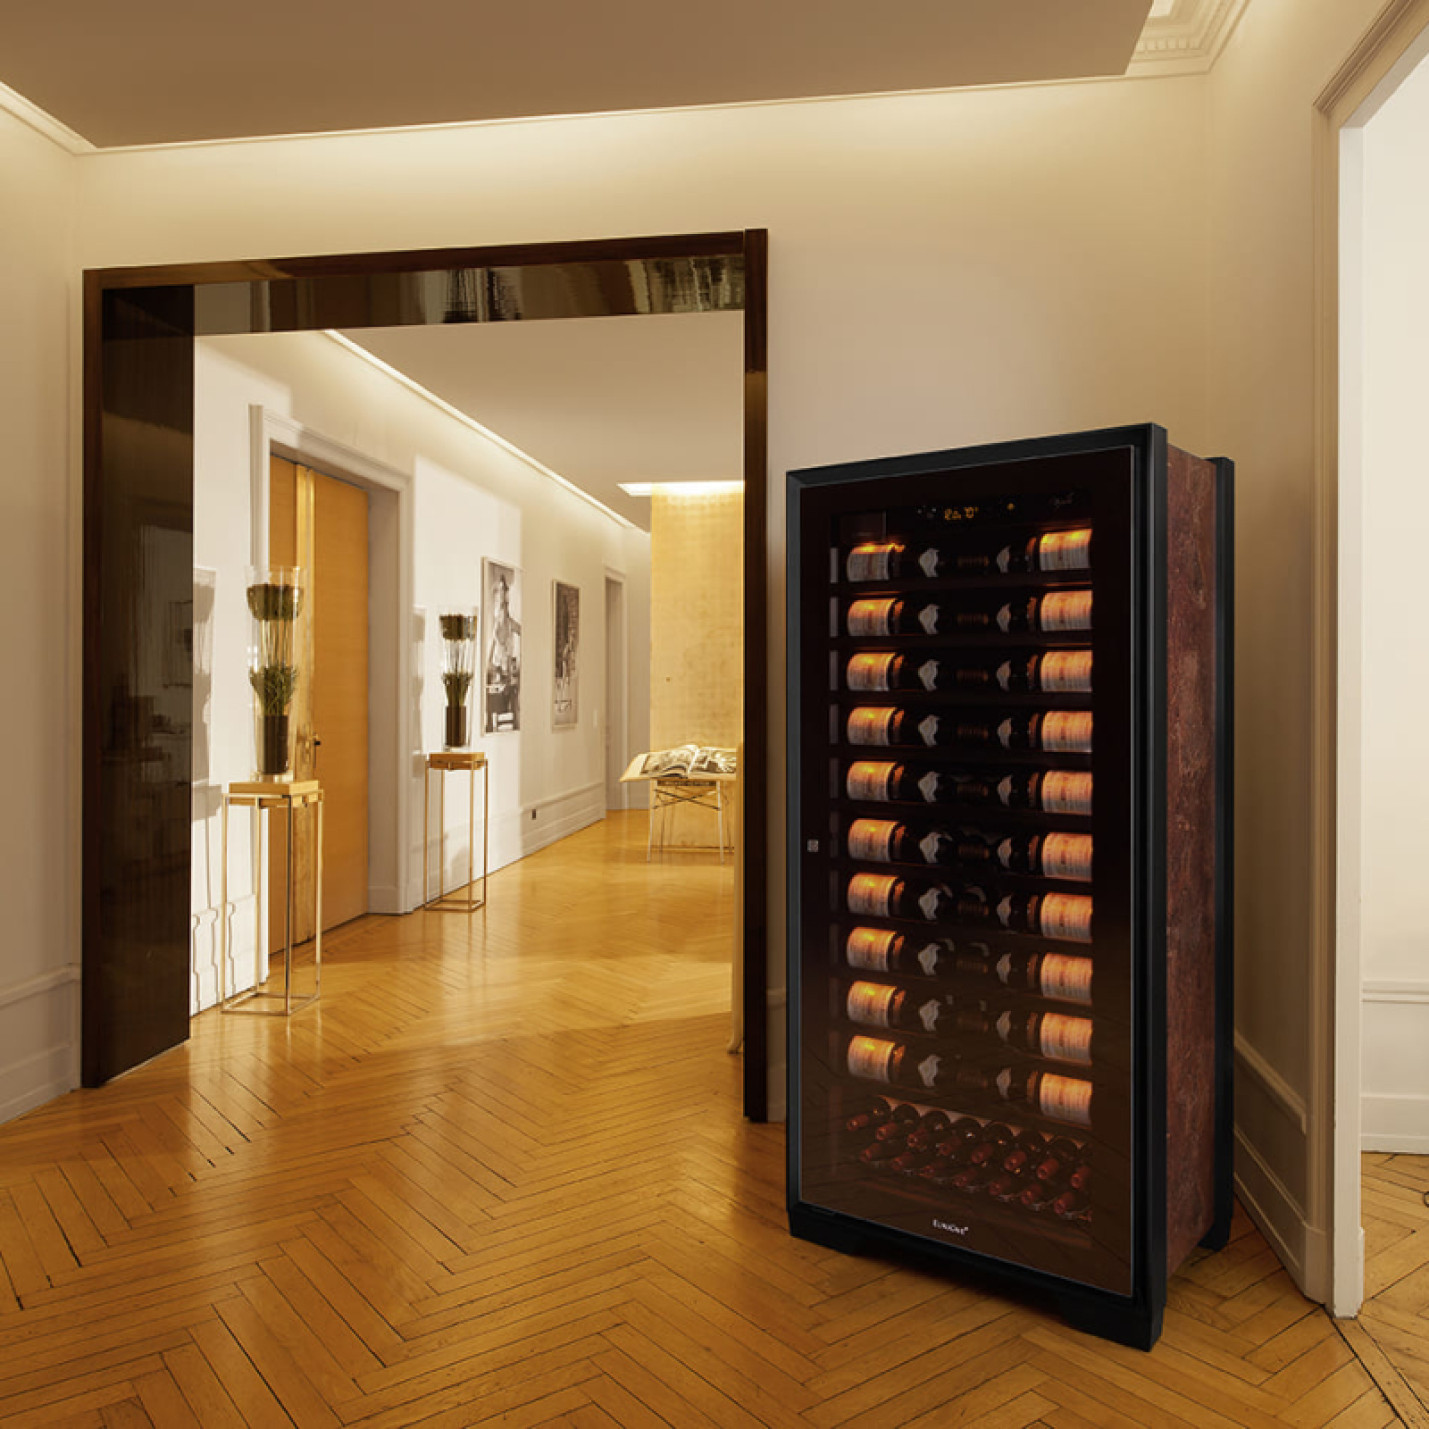  Dans un appartement luxueux français, la grande cave à vin Royale trouve naturellement sa place au milieu des oeuvres d'art.